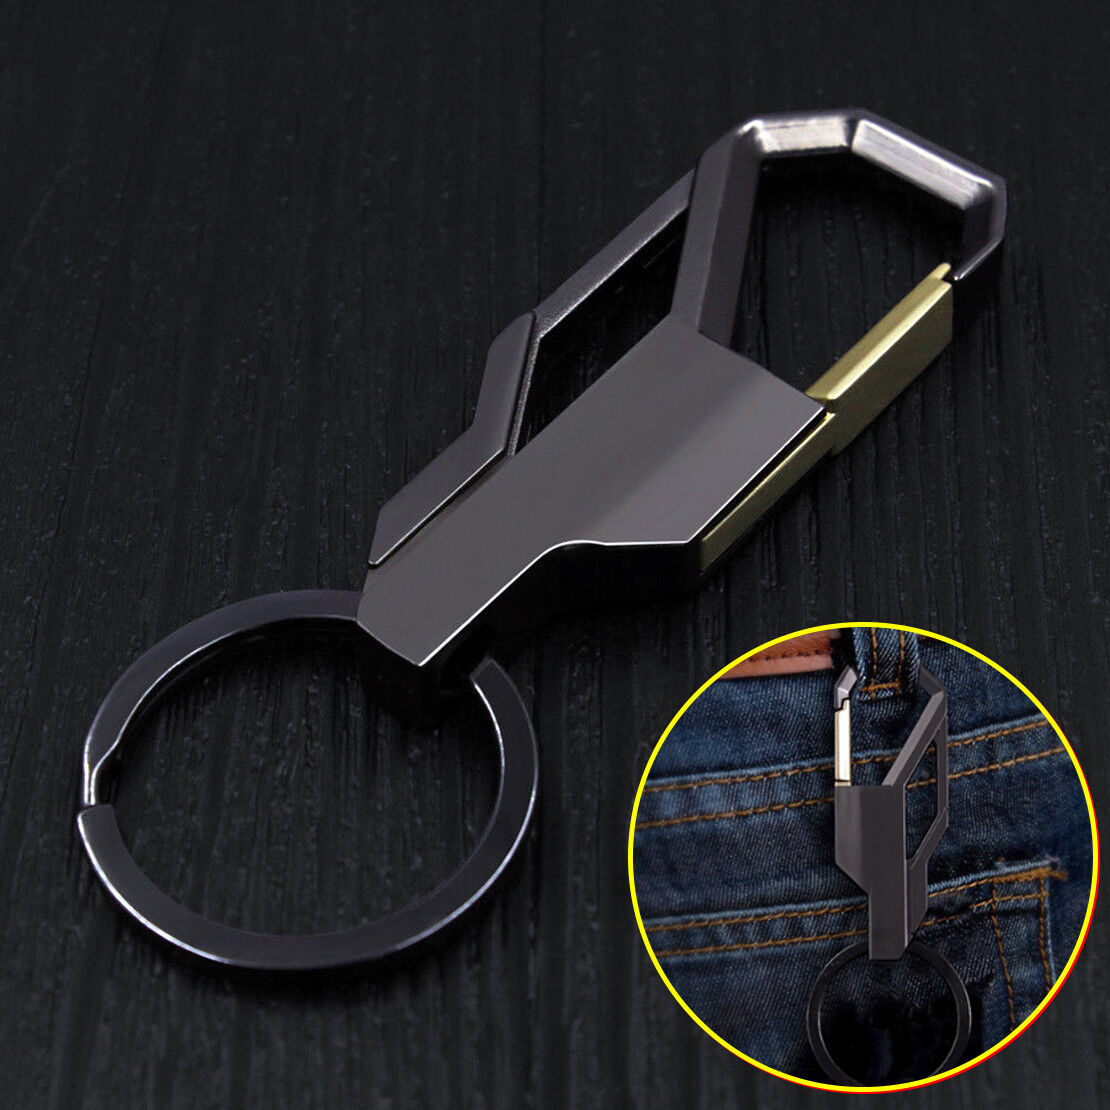 Car Keyring Keychain Alloy Metal Fashion Keyfob Key Chain Ring Accessory Gift